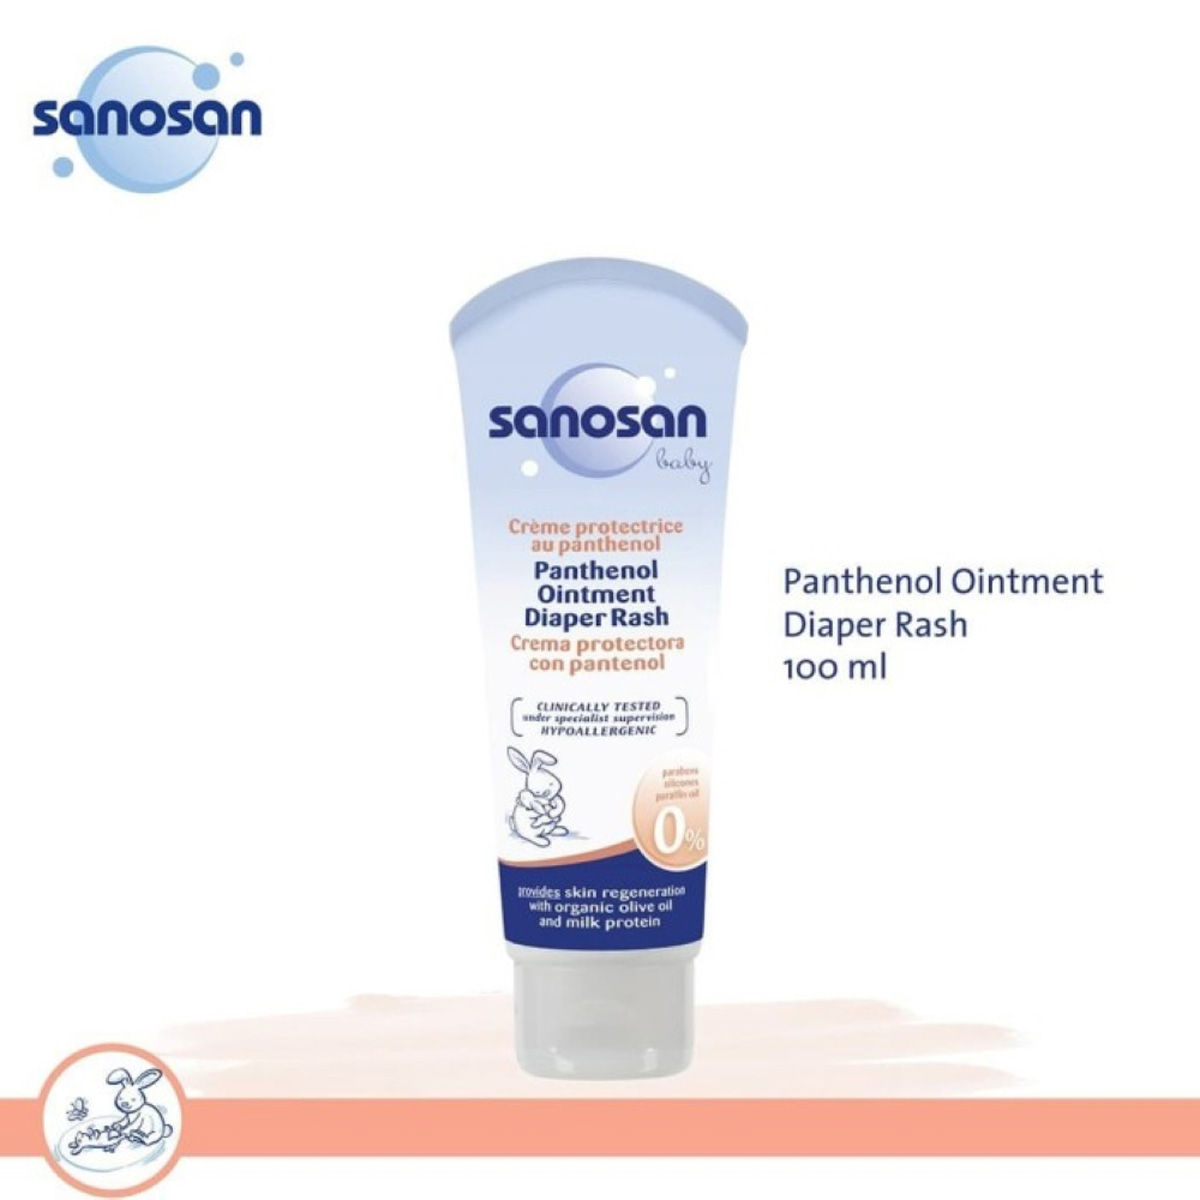 Buy Sanosan Baby Panthenol Diaper Rash Ointment, 100 ml Online